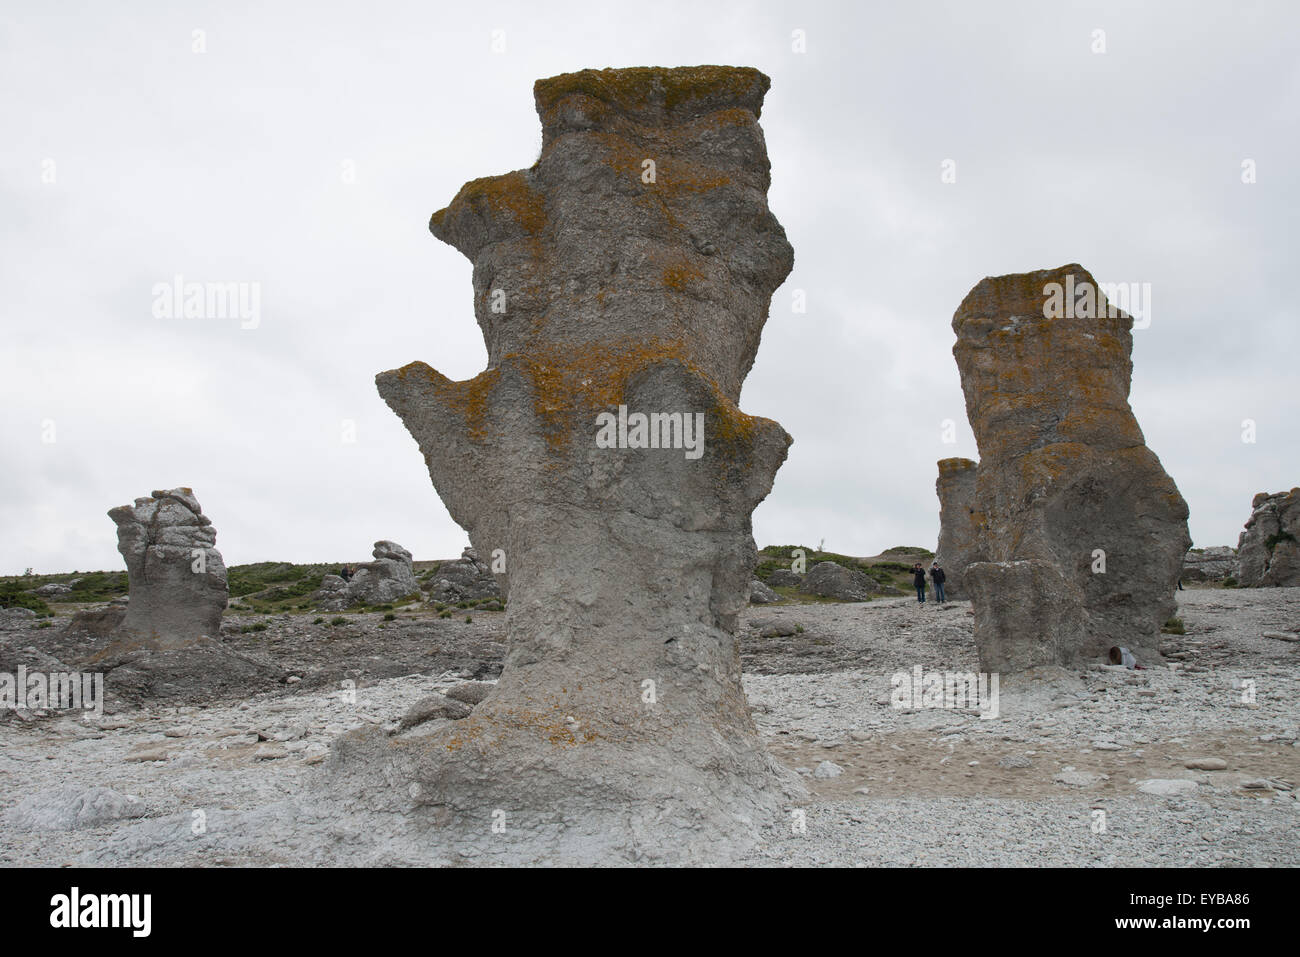 La pile ou seastack - un relief géologique constitué d'une colonne verticale et souvent escarpées ou des colonnes de rock formé par l'érosion Banque D'Images